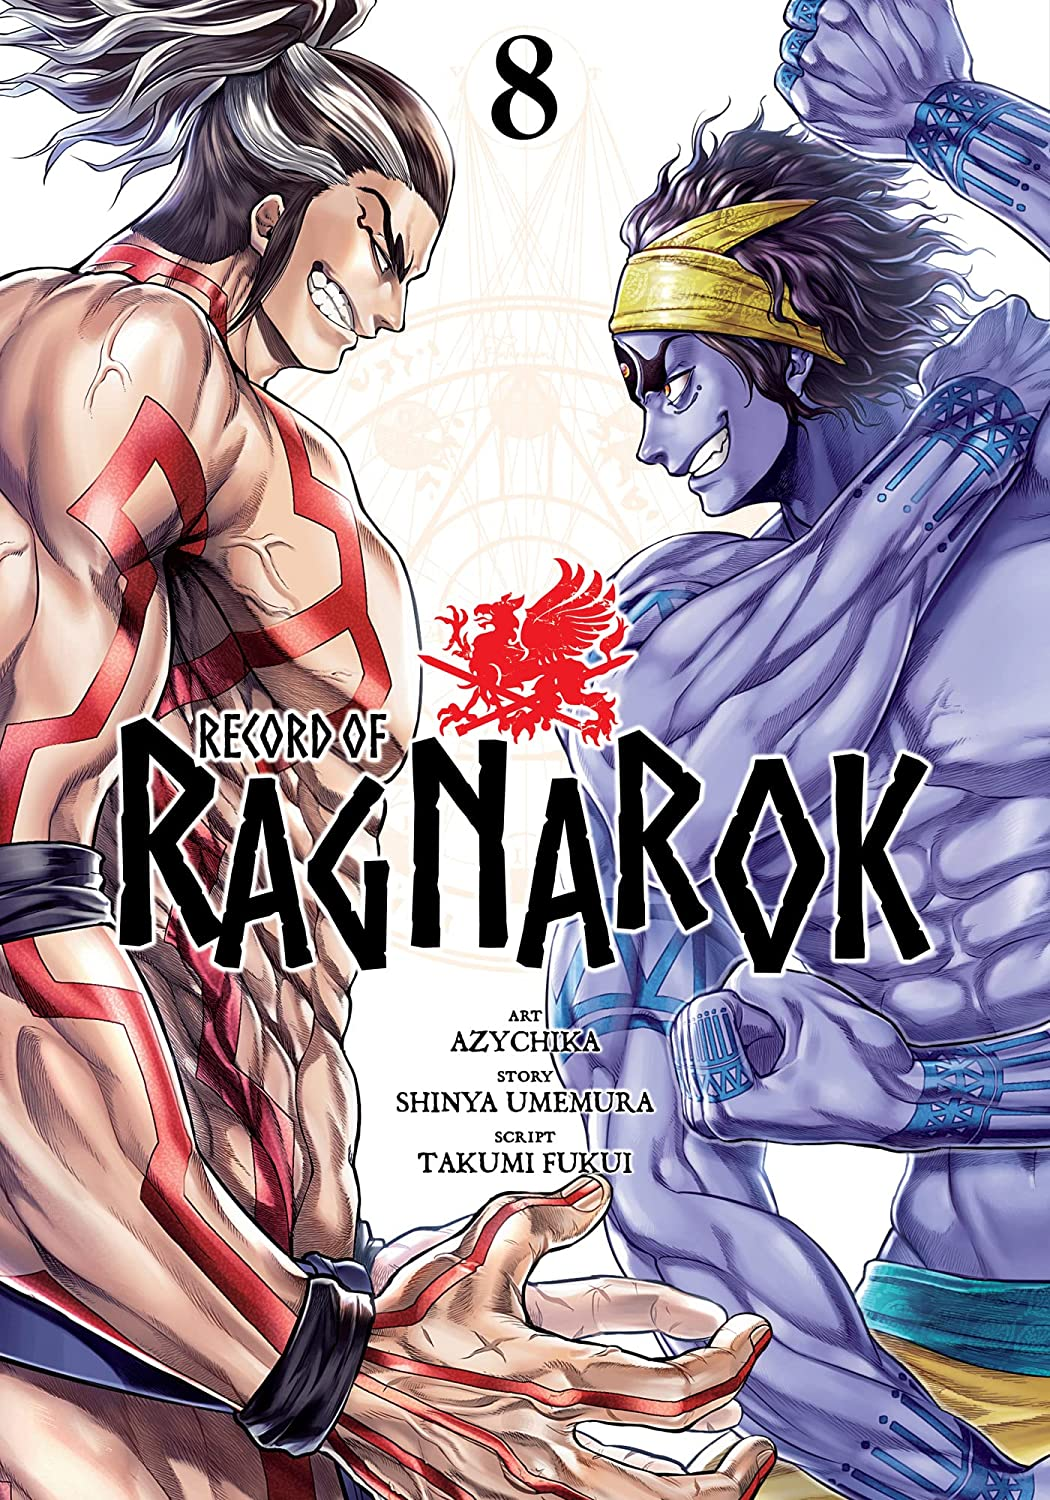 Volume 15, Shuumatsu no Valkyrie: Record of Ragnarok Wiki